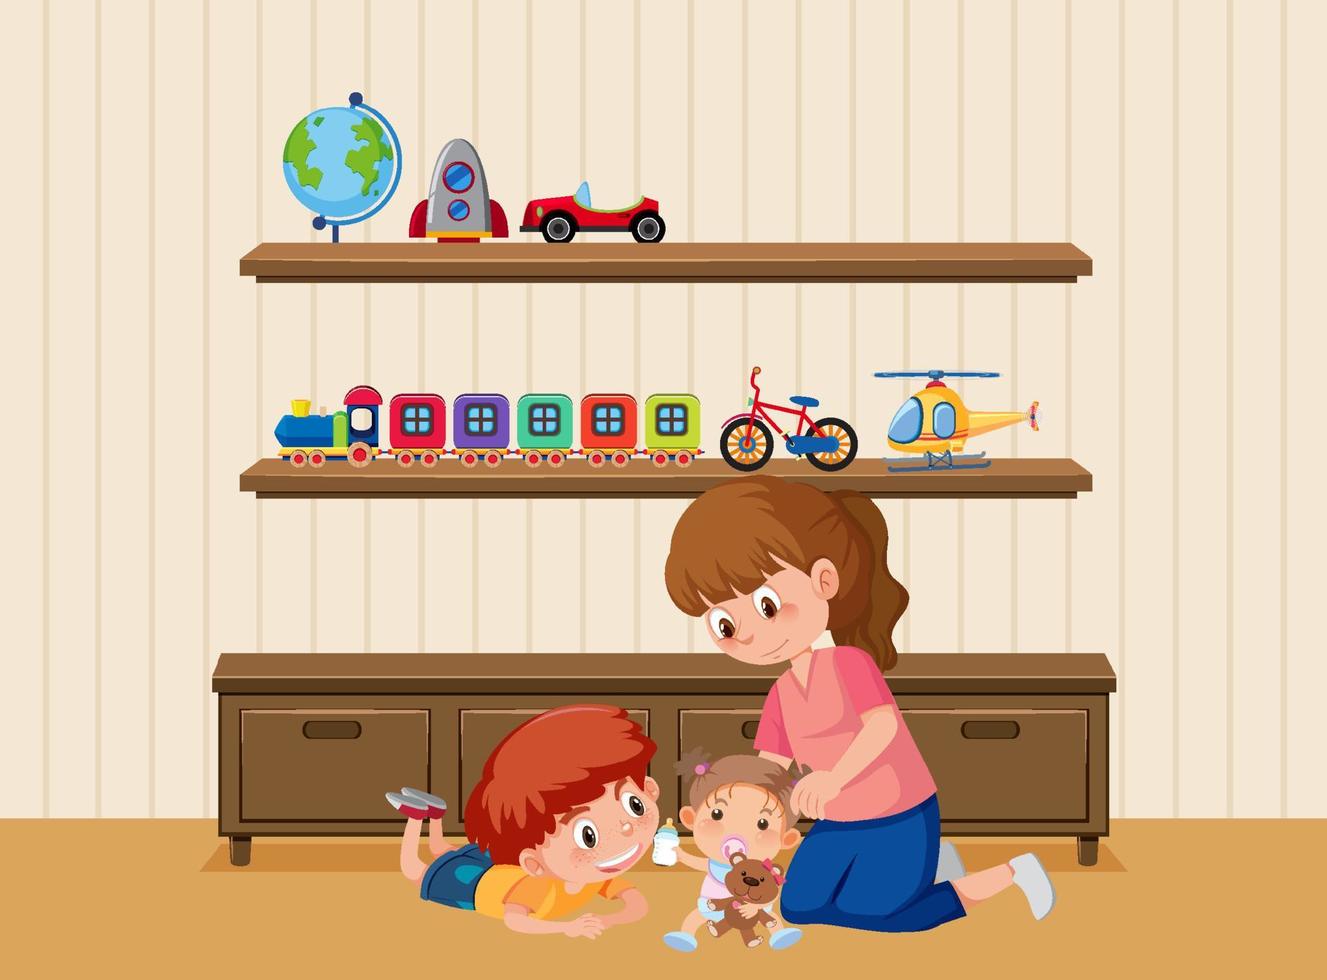 scène de salon avec personnage de dessin animé pour enfants vecteur